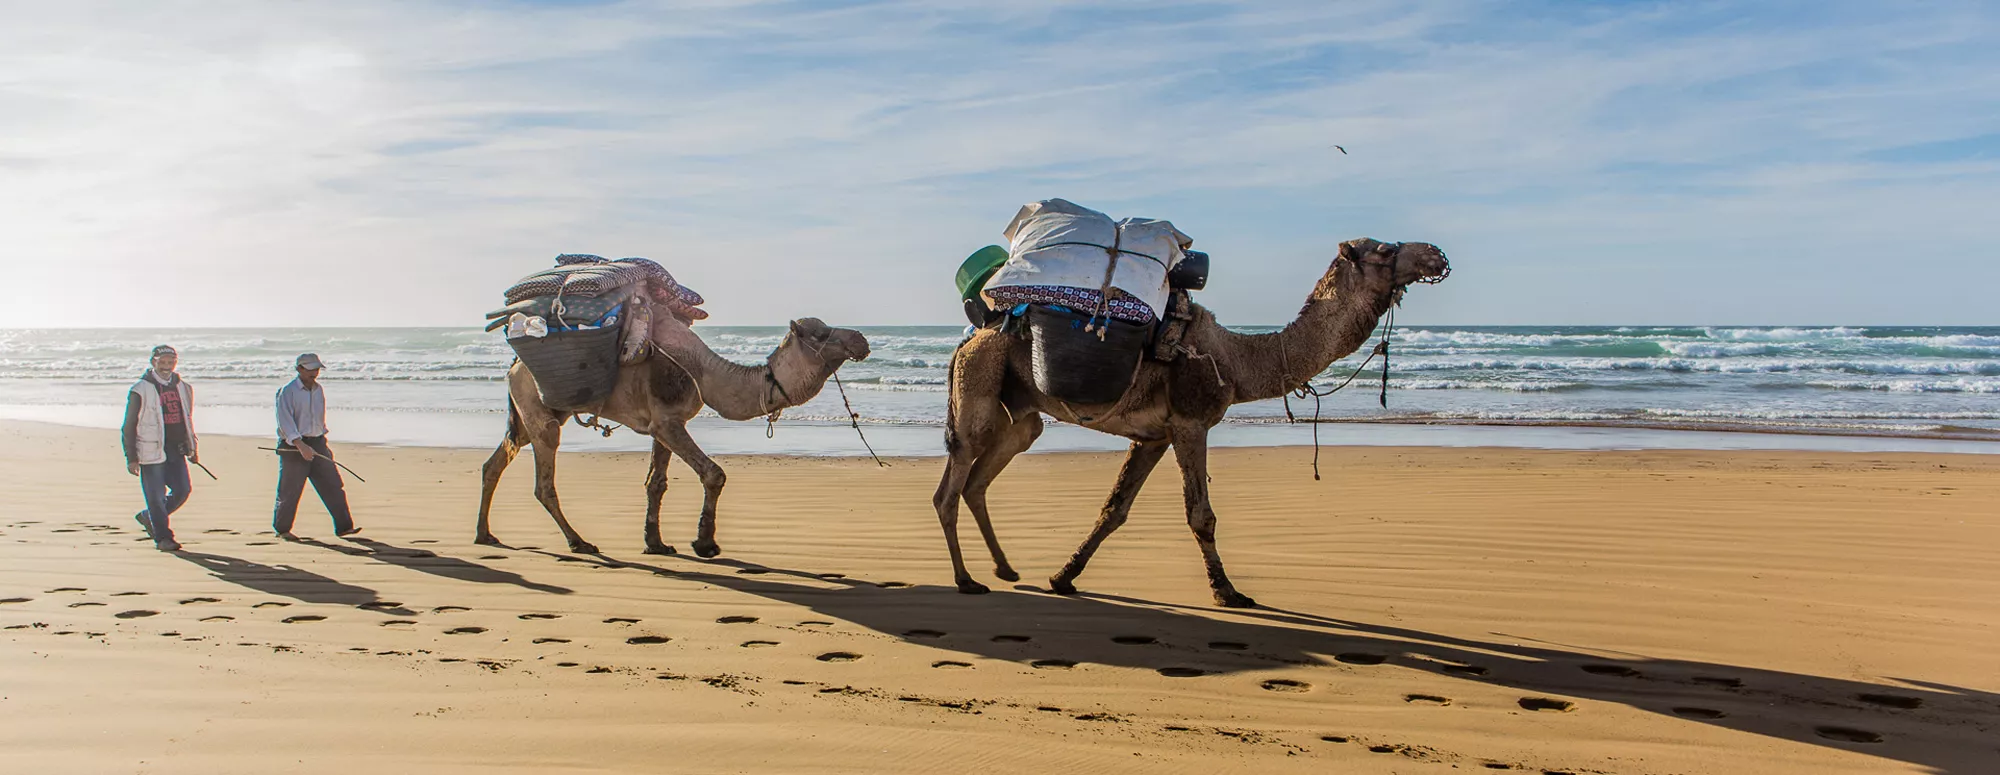 Atlantische kust wandelen & kamperen met bagagevervoer (kamelen)